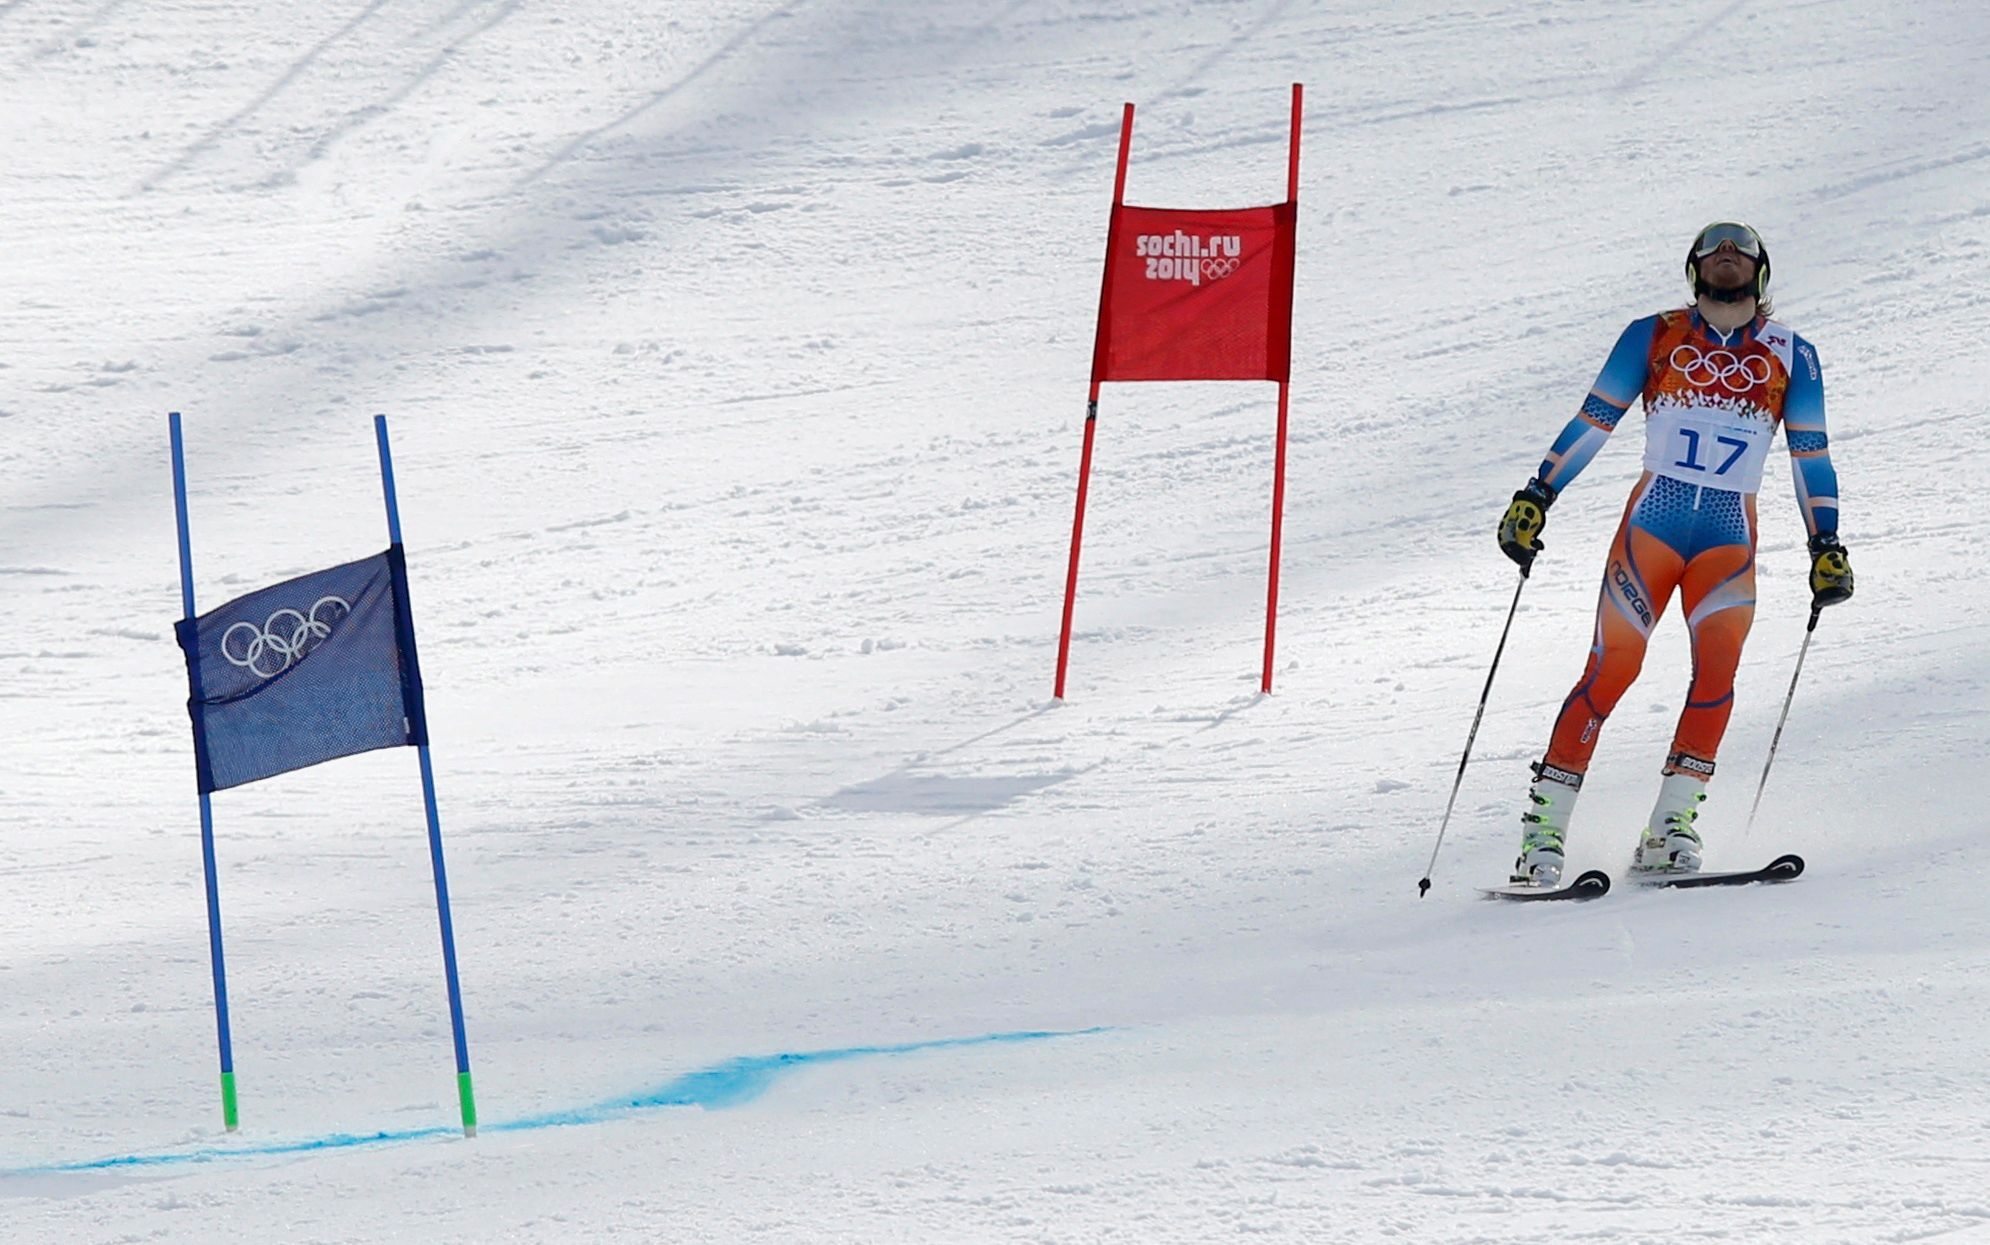 Soči 2014, obří slalom M: Kjetil Jansrud, Norsko